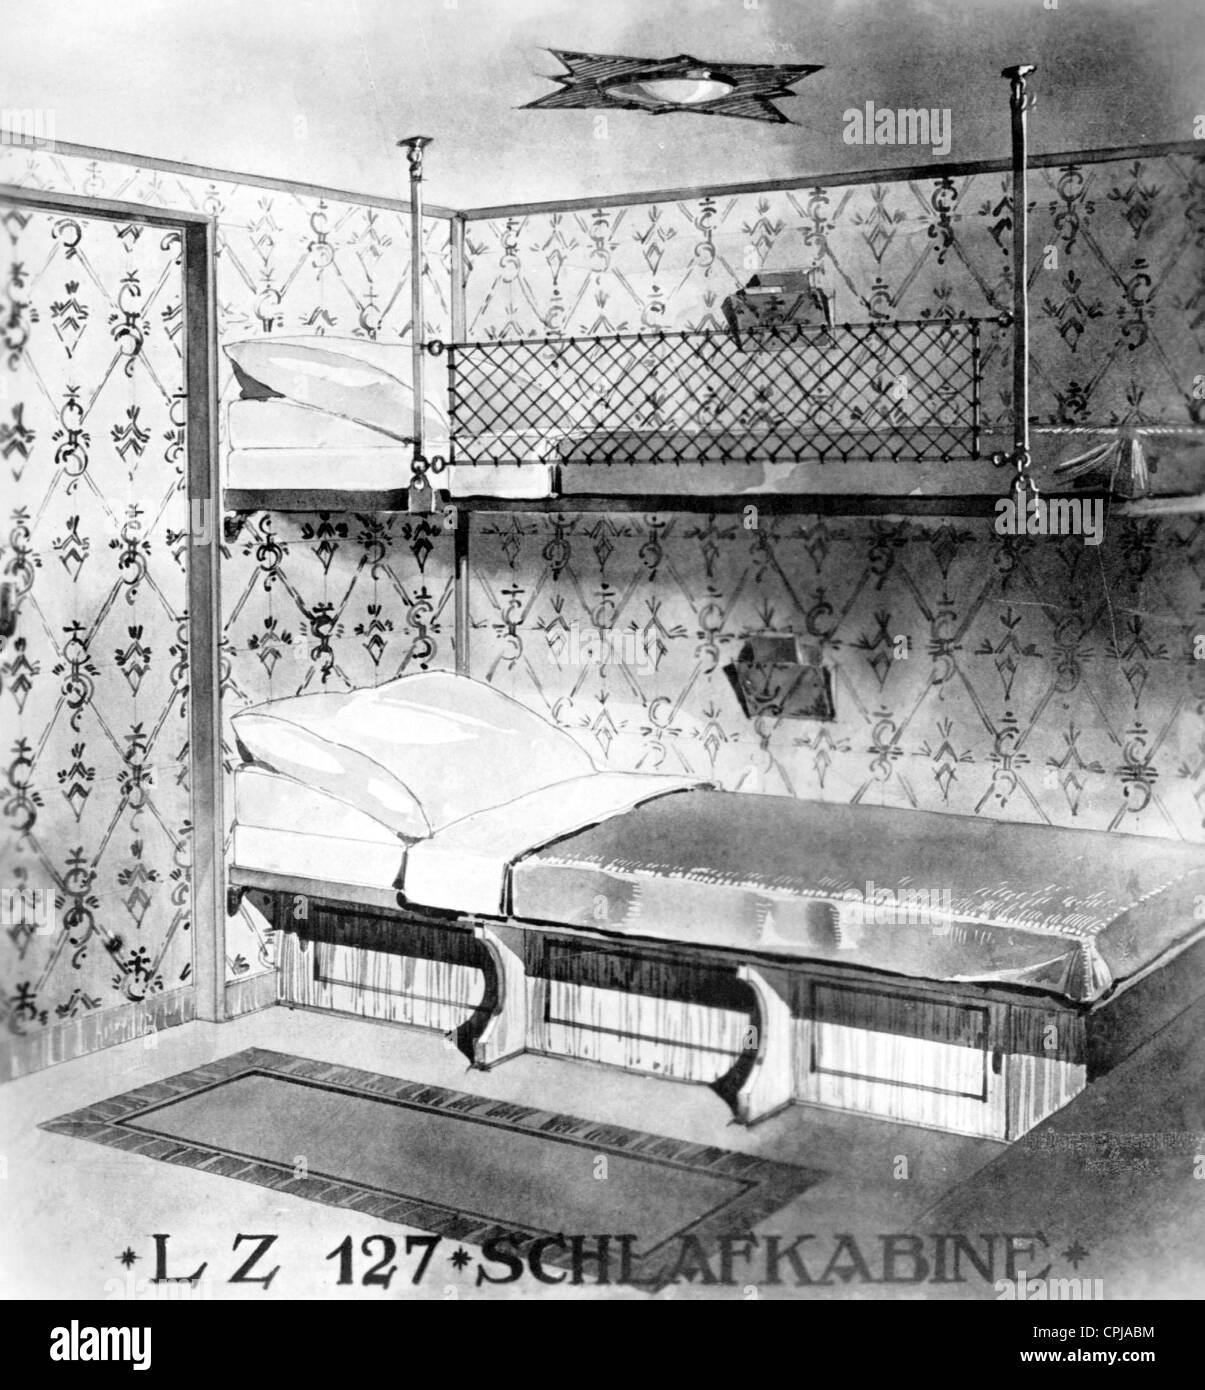 Schlafabteil des LZ 127 "Graf Zeppelin" Stockfoto